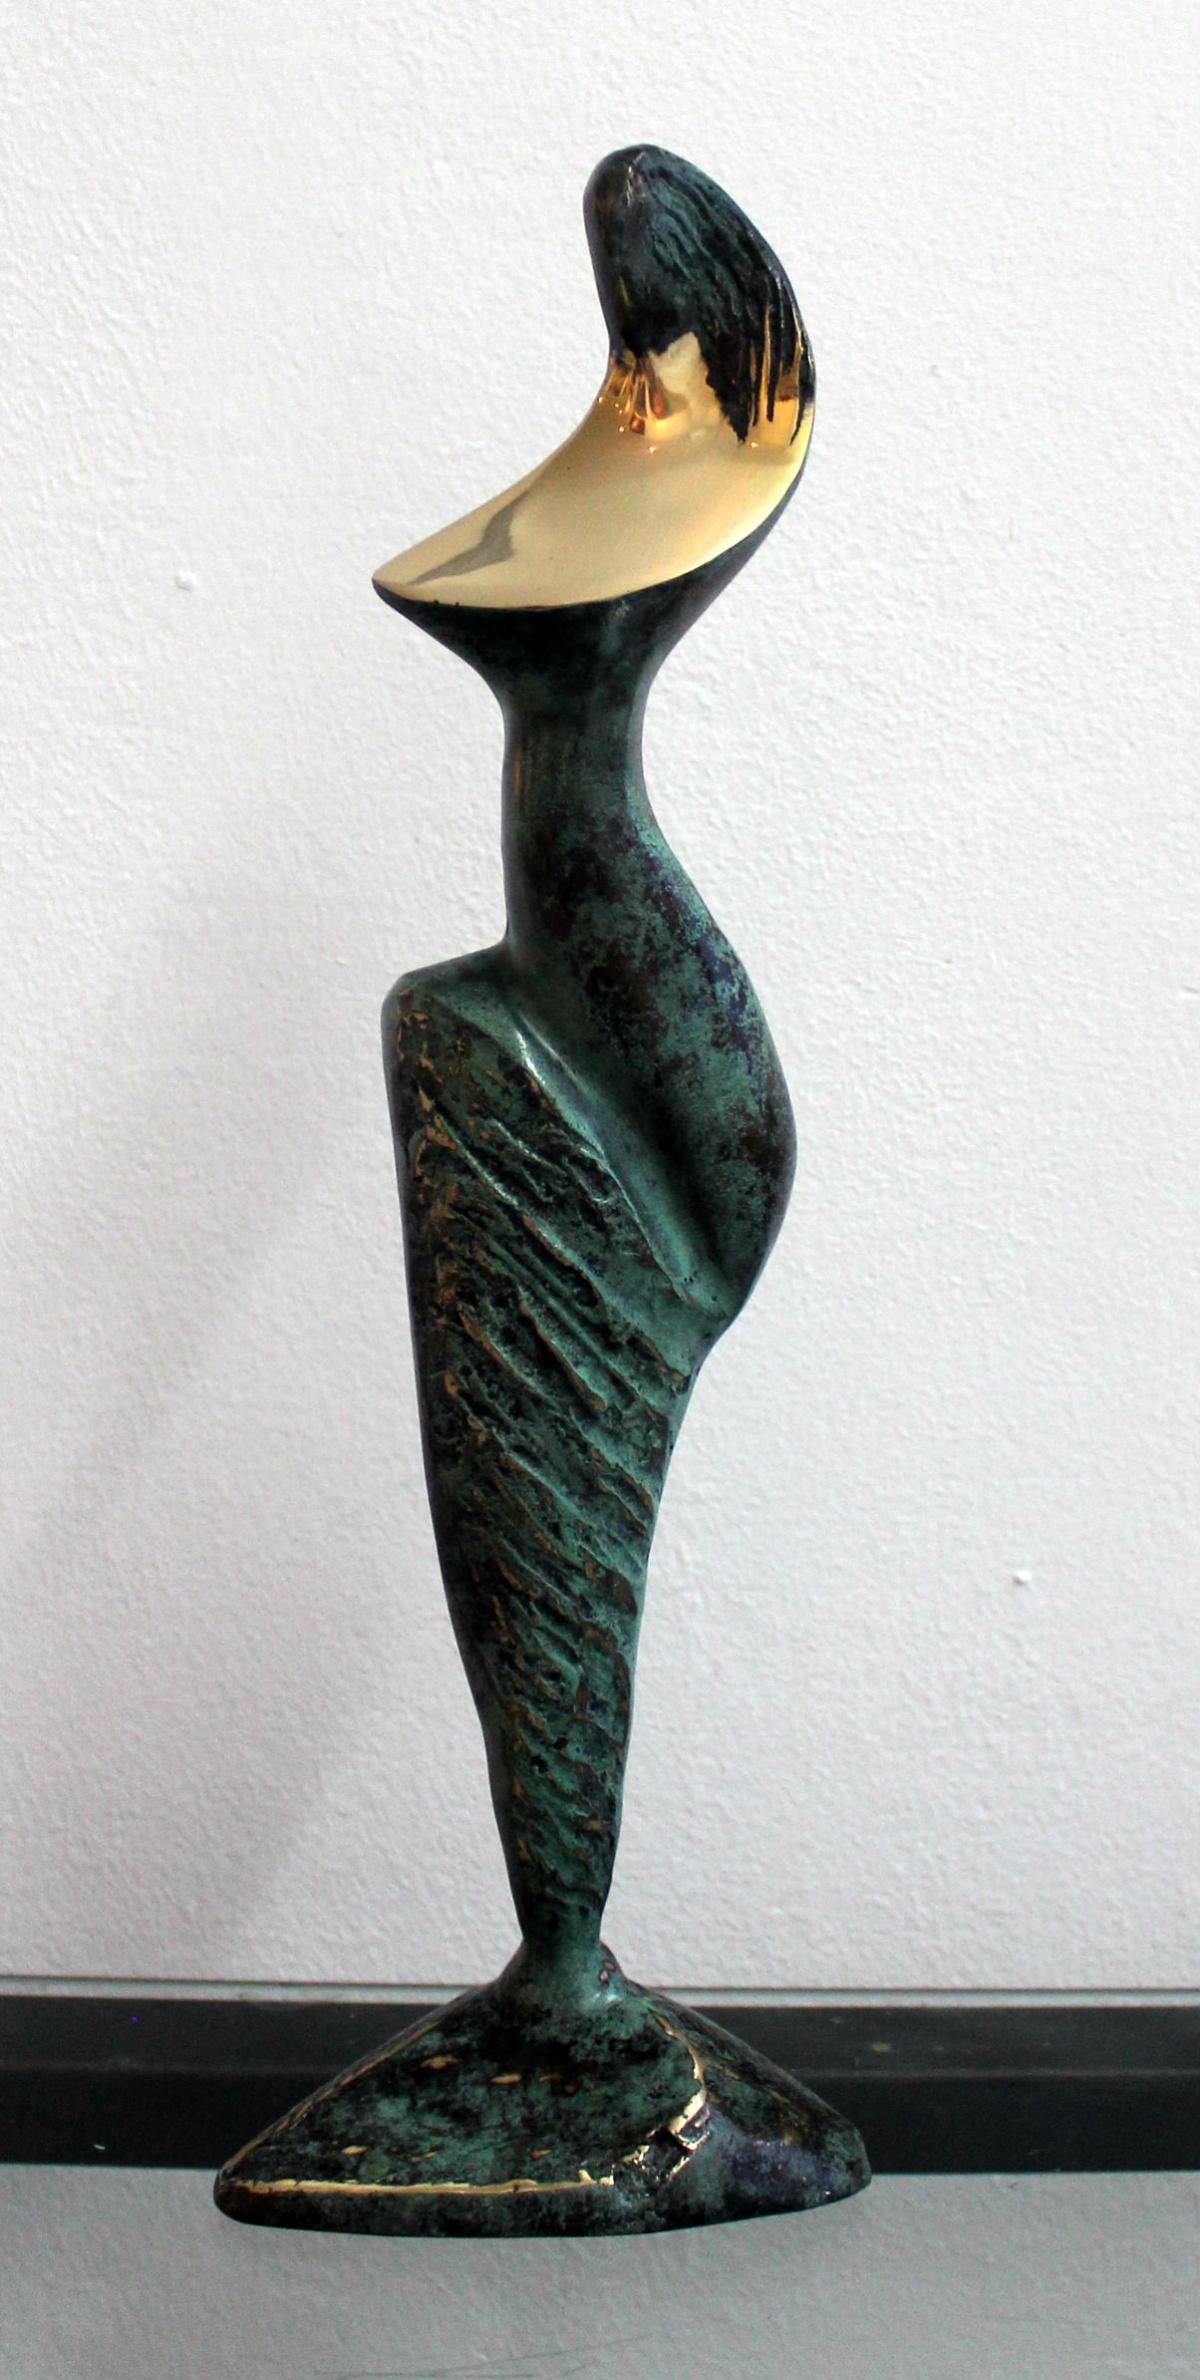 Stanisław Wysocki Nude Sculpture - Dame - XXI Century, Contemporary Bronze Sculpture, Figurative, Nude, Abstract